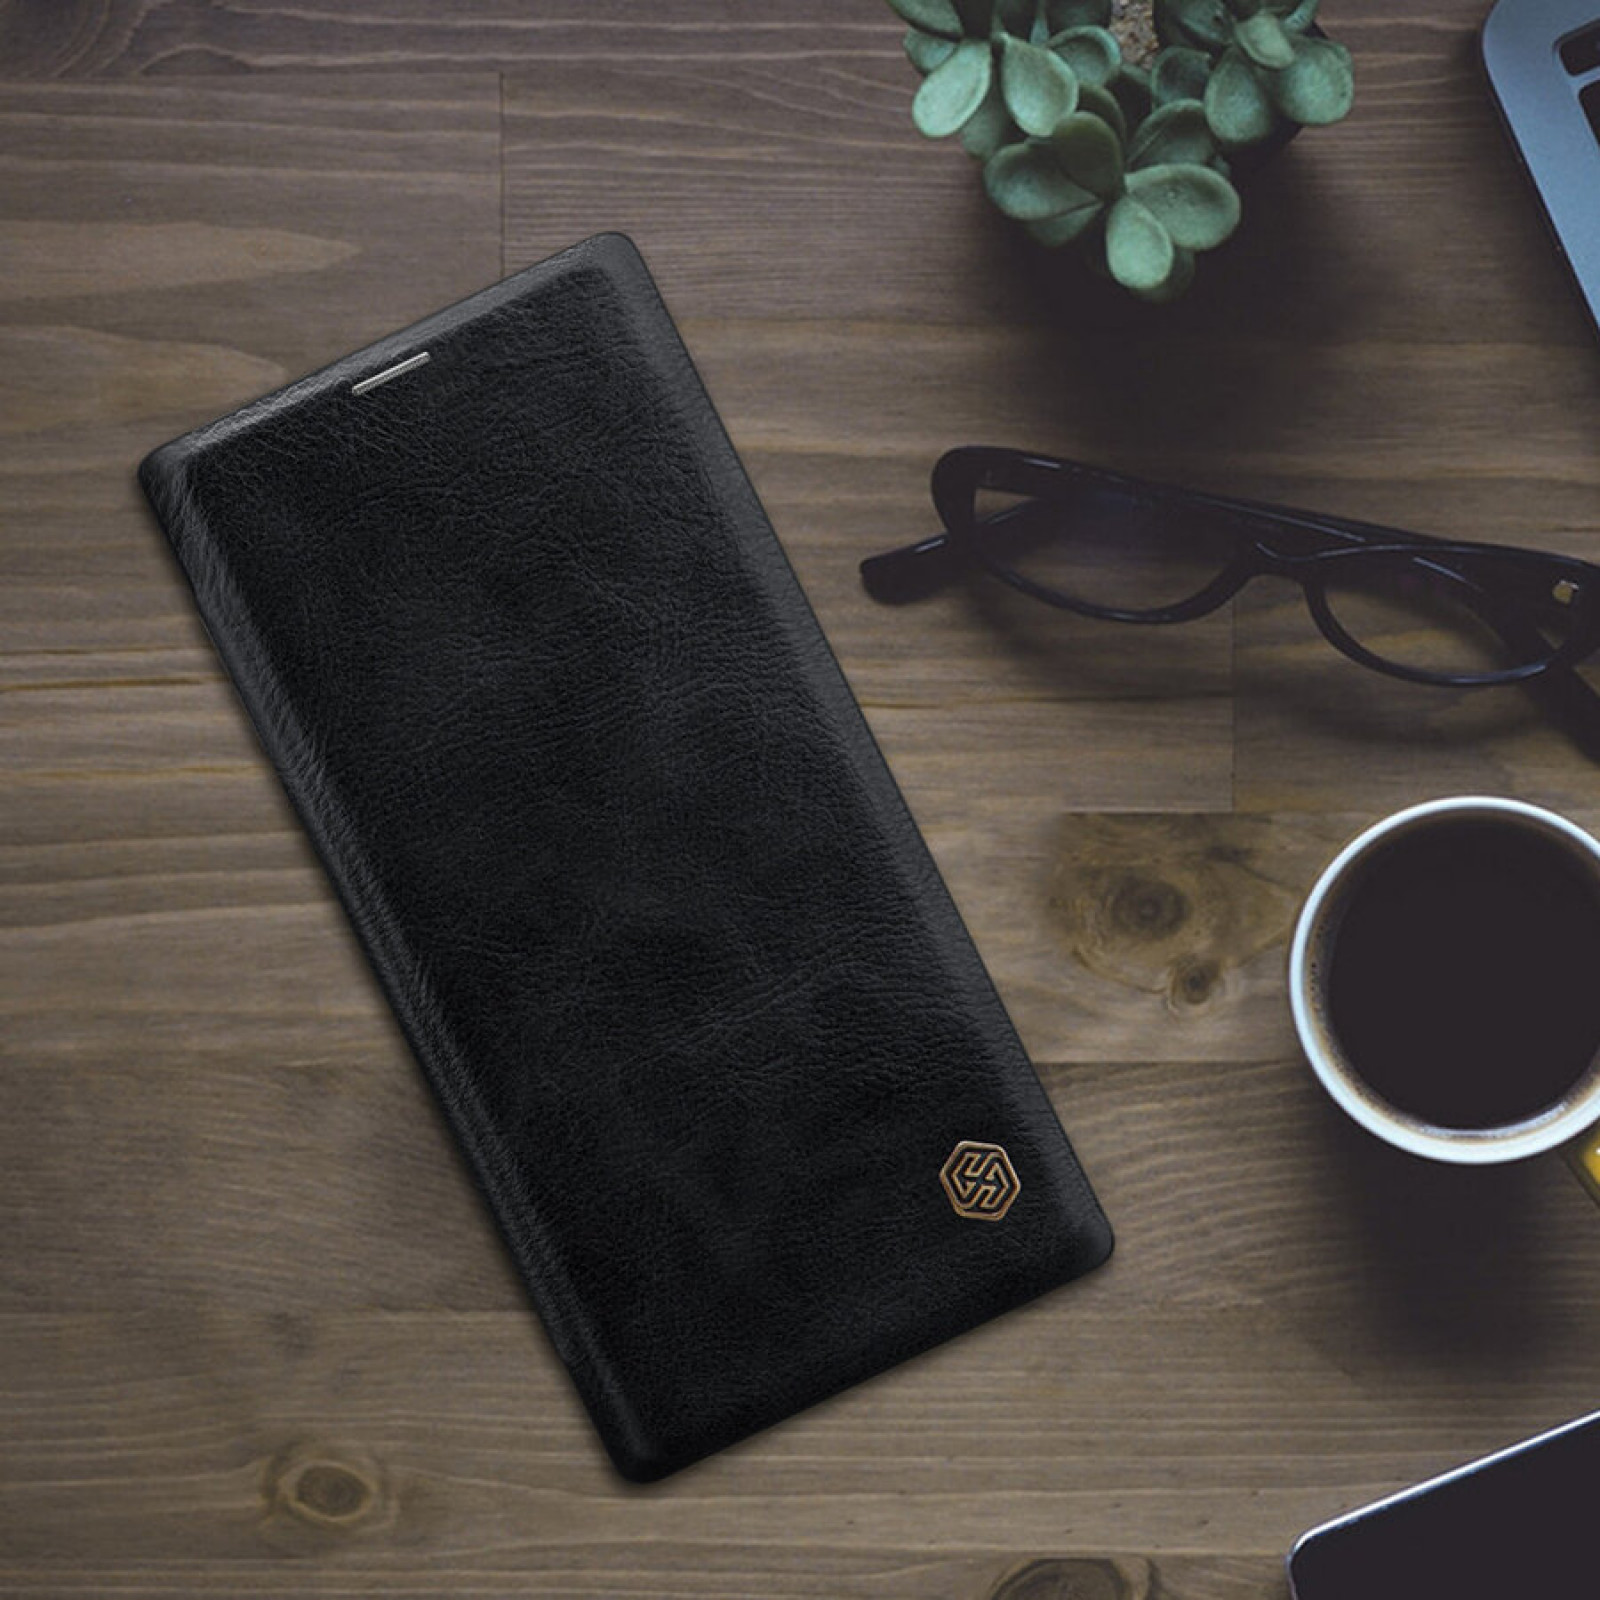 Калъф Nillkin Qin за Samsung Galaxy Note 10 - Черен